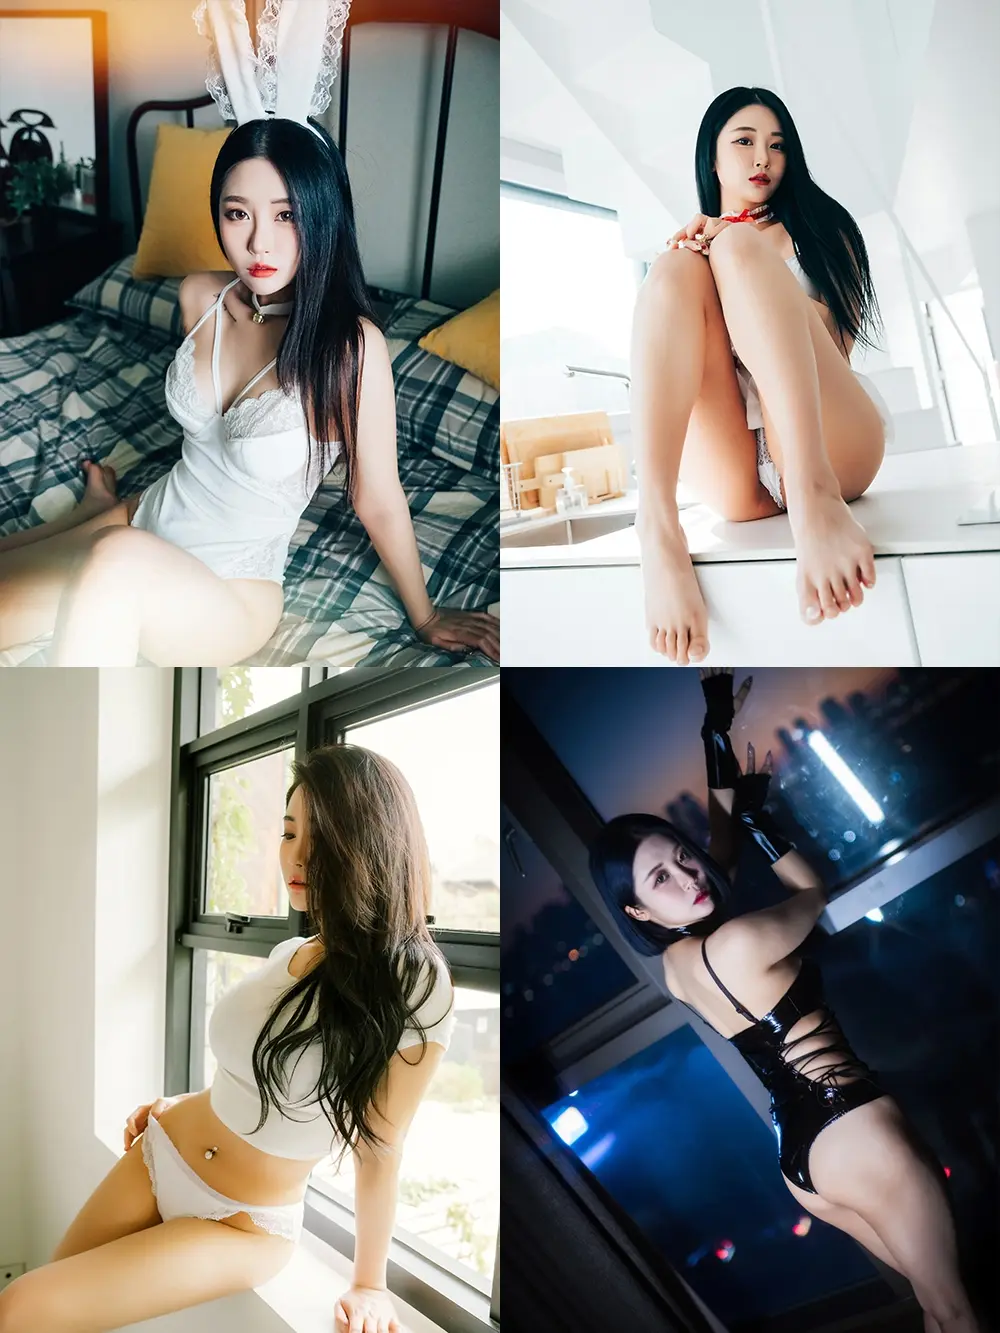 韩国妹子Bomi(보미) - 写真合集 - 胖次猫自习室 [92套] [持续更新...]-胖次猫自习室